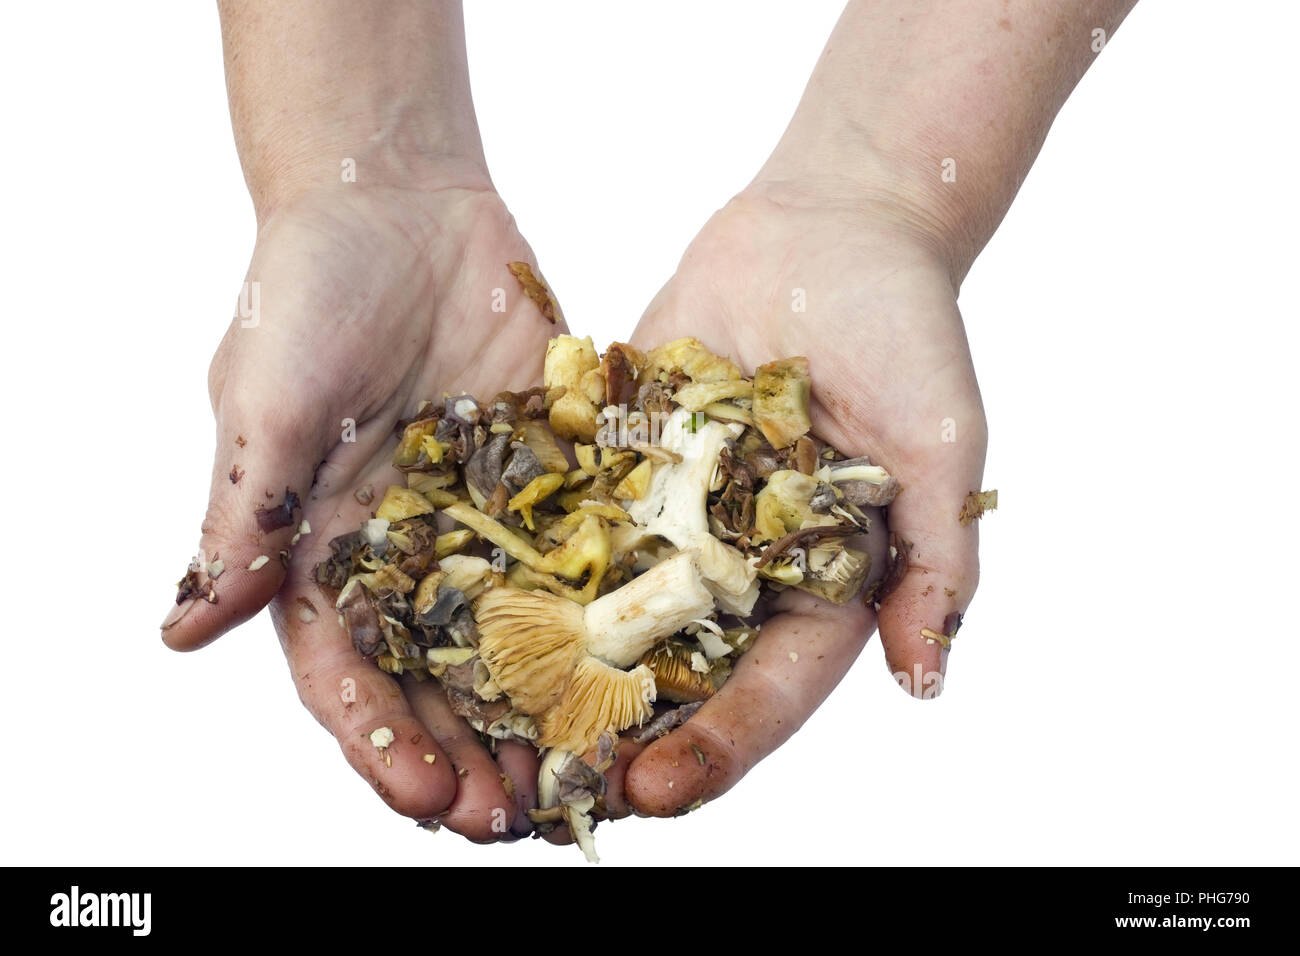 Préparation de spécialités de champignons est un concept de travail salissant Banque D'Images